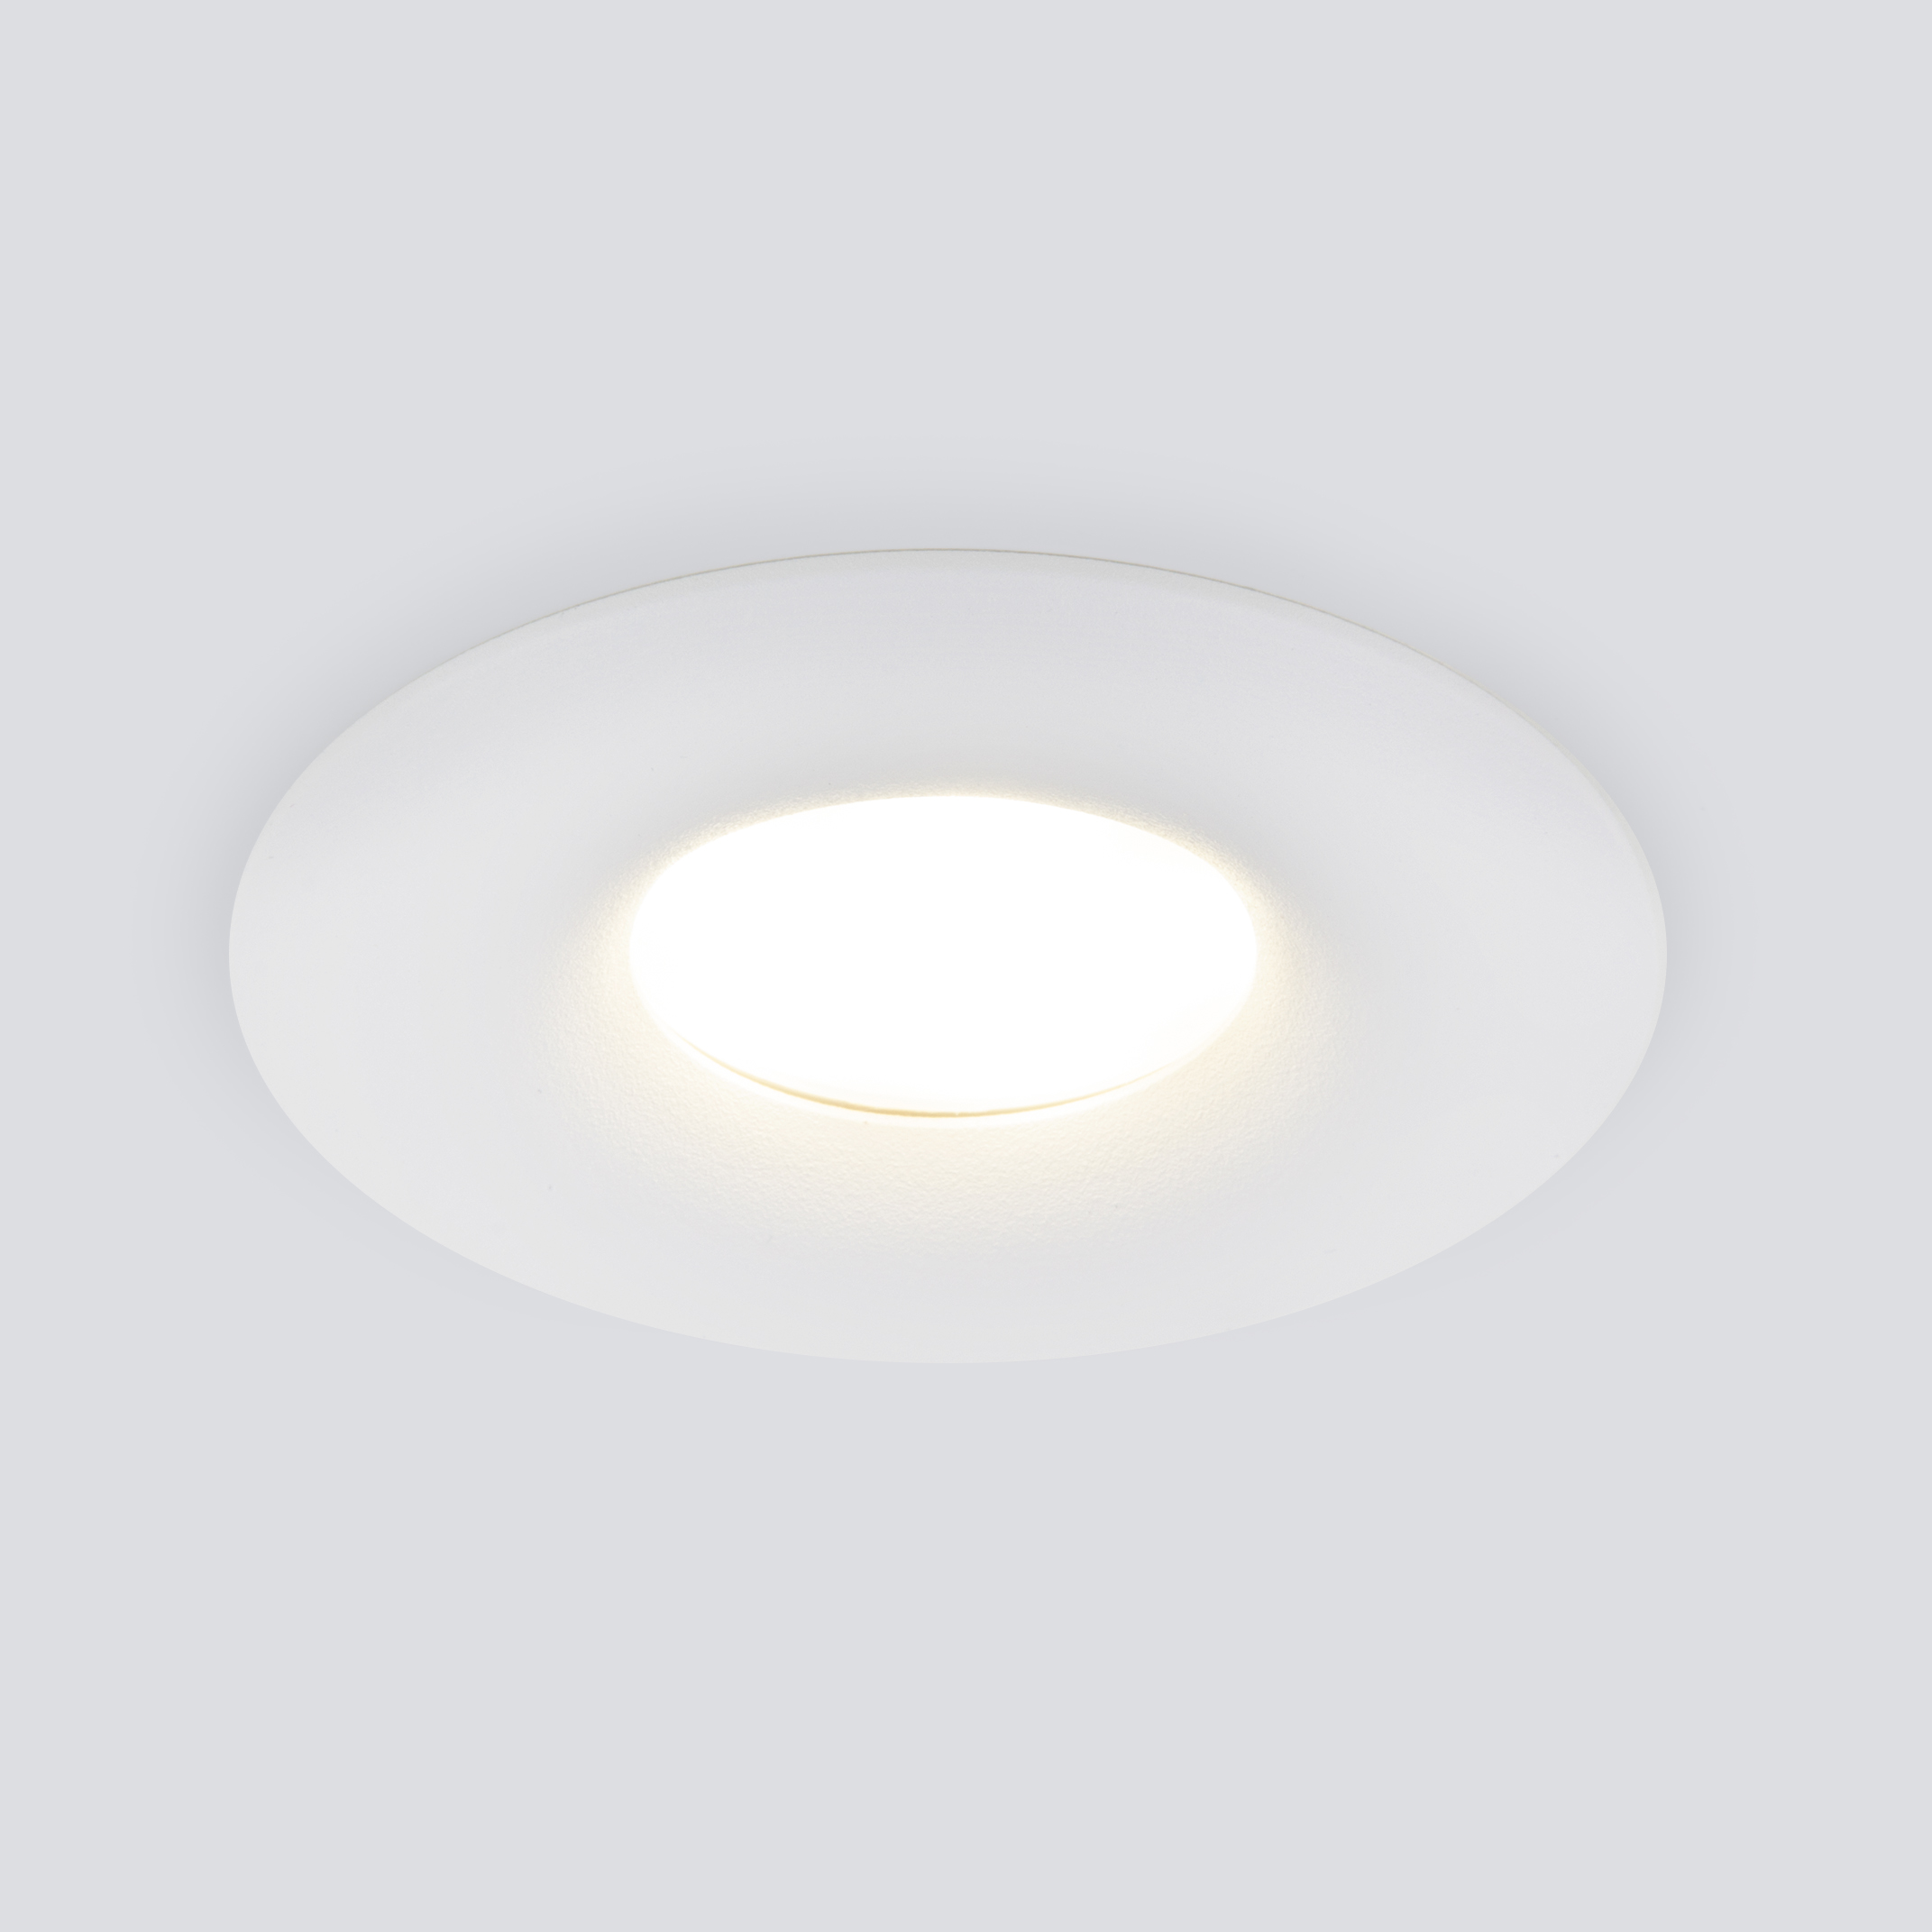 Встраиваемый светильник Elektrostandard 123 MR16 a053355 - фото 1